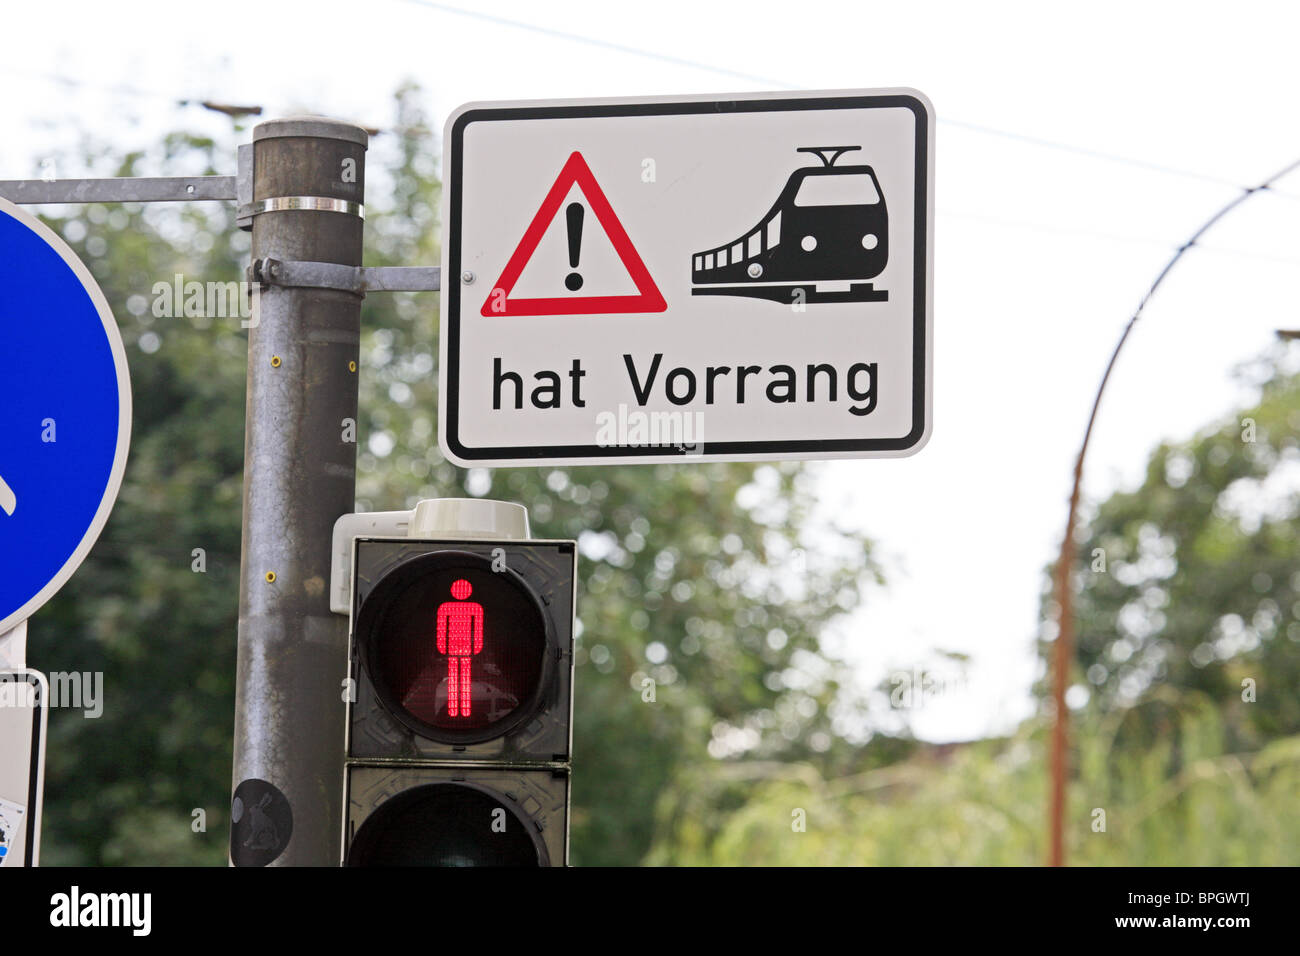 Alemania; señal de advertencia a los peatones por un cruce que los tranvías tienen prioridad Foto de stock